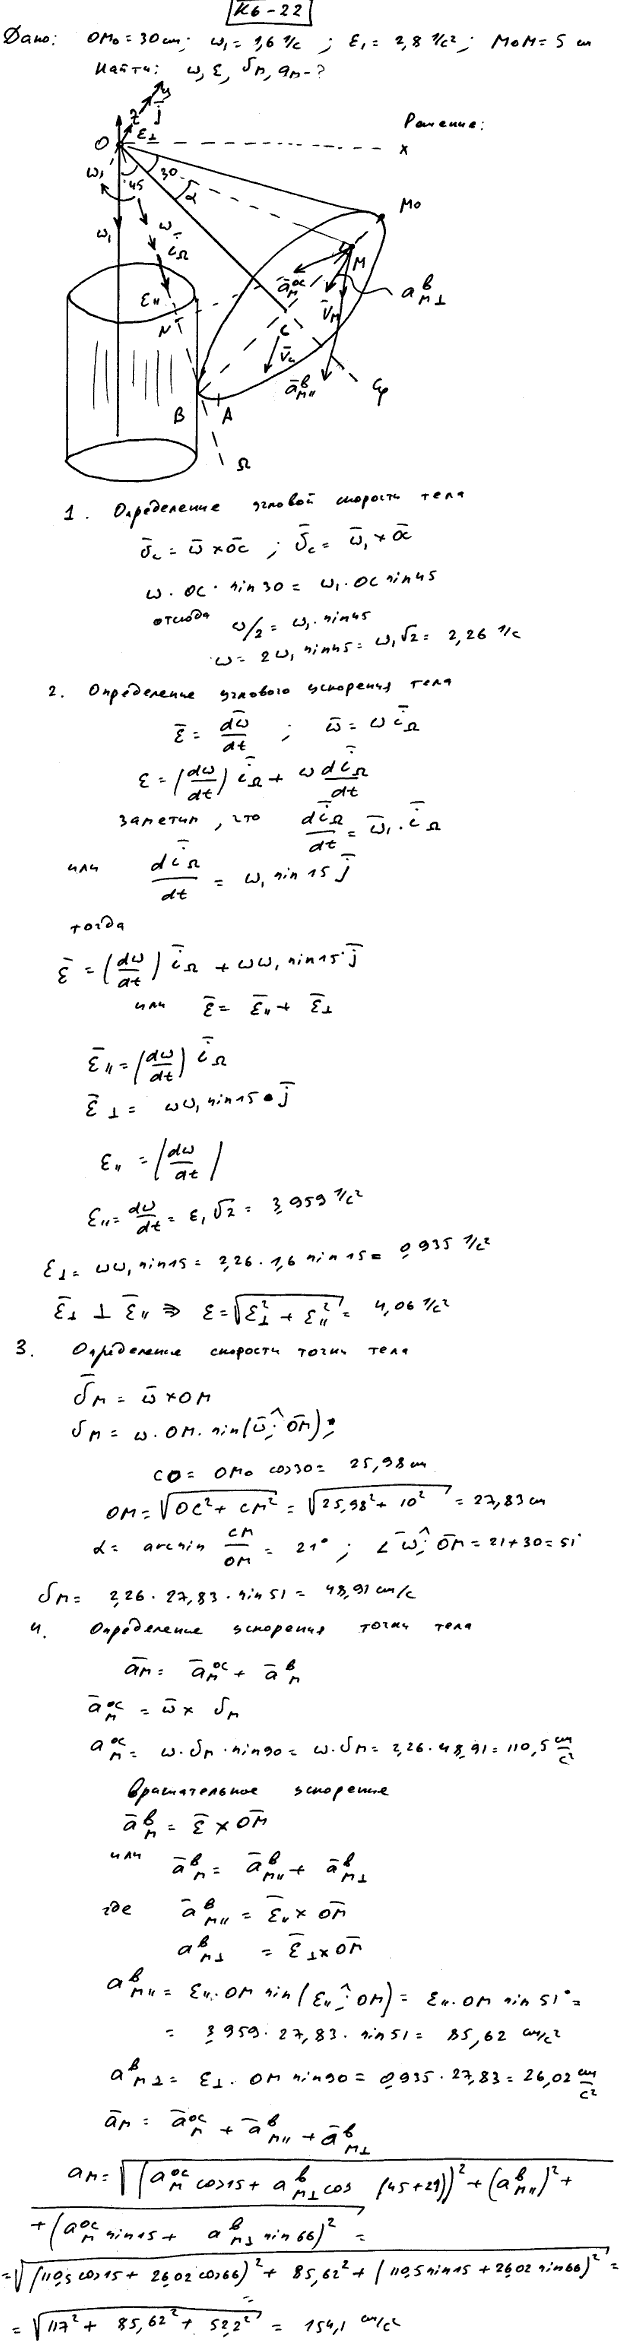 Задание К.6 вариант 22. OM0=30 см; ω1=1,6 рад/с; ε1=2,8 рад/с^2; M0M=5 см